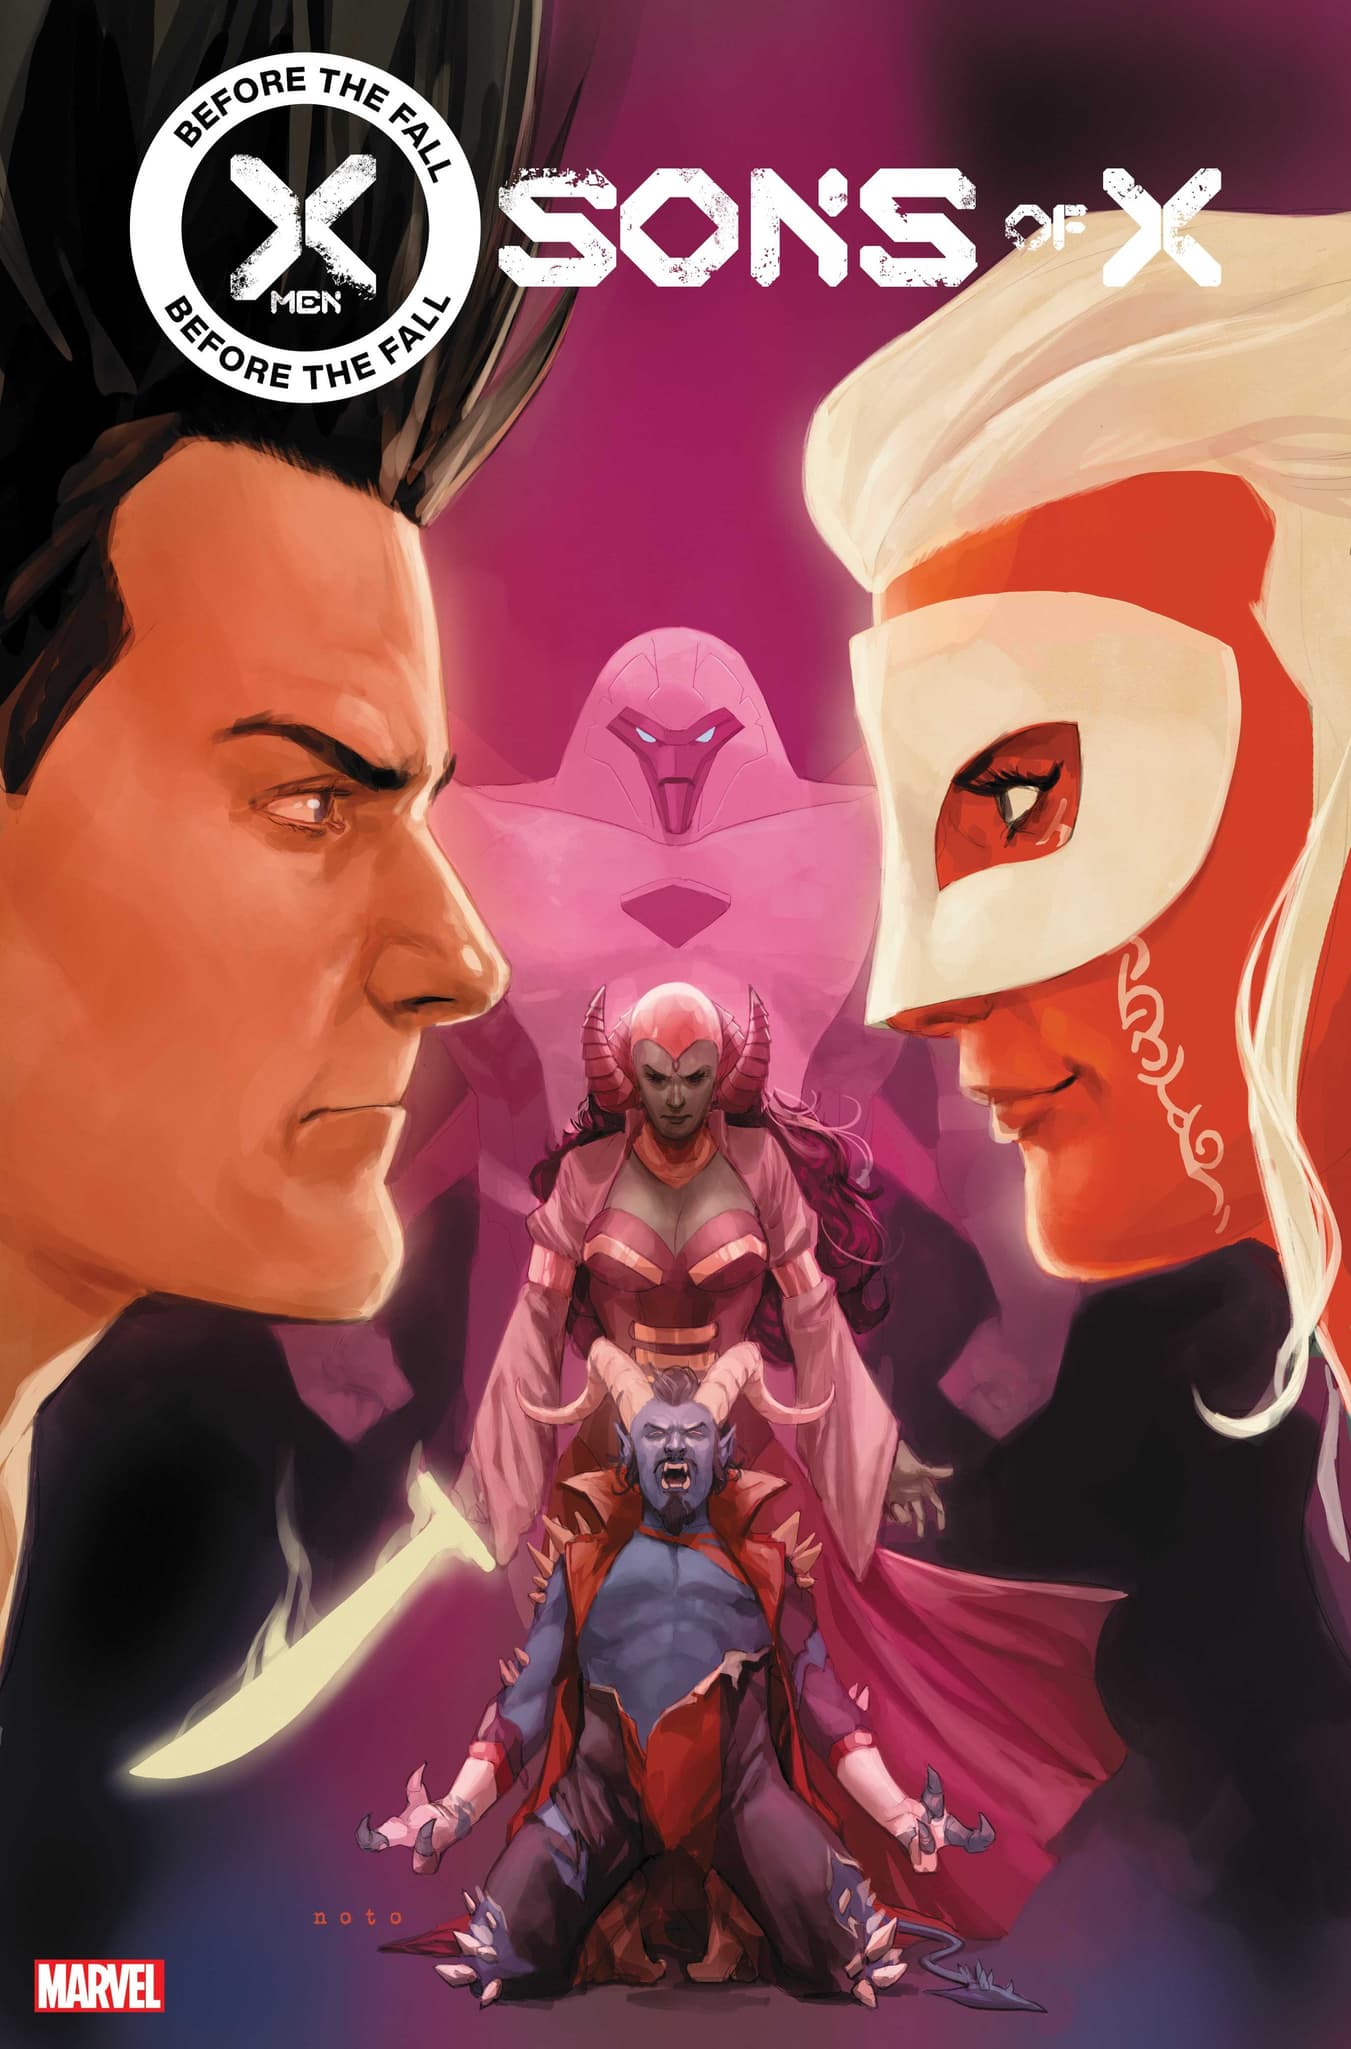 FALL OF X: Marvel anuncia one-shots de introdução para nova era dos X-Men